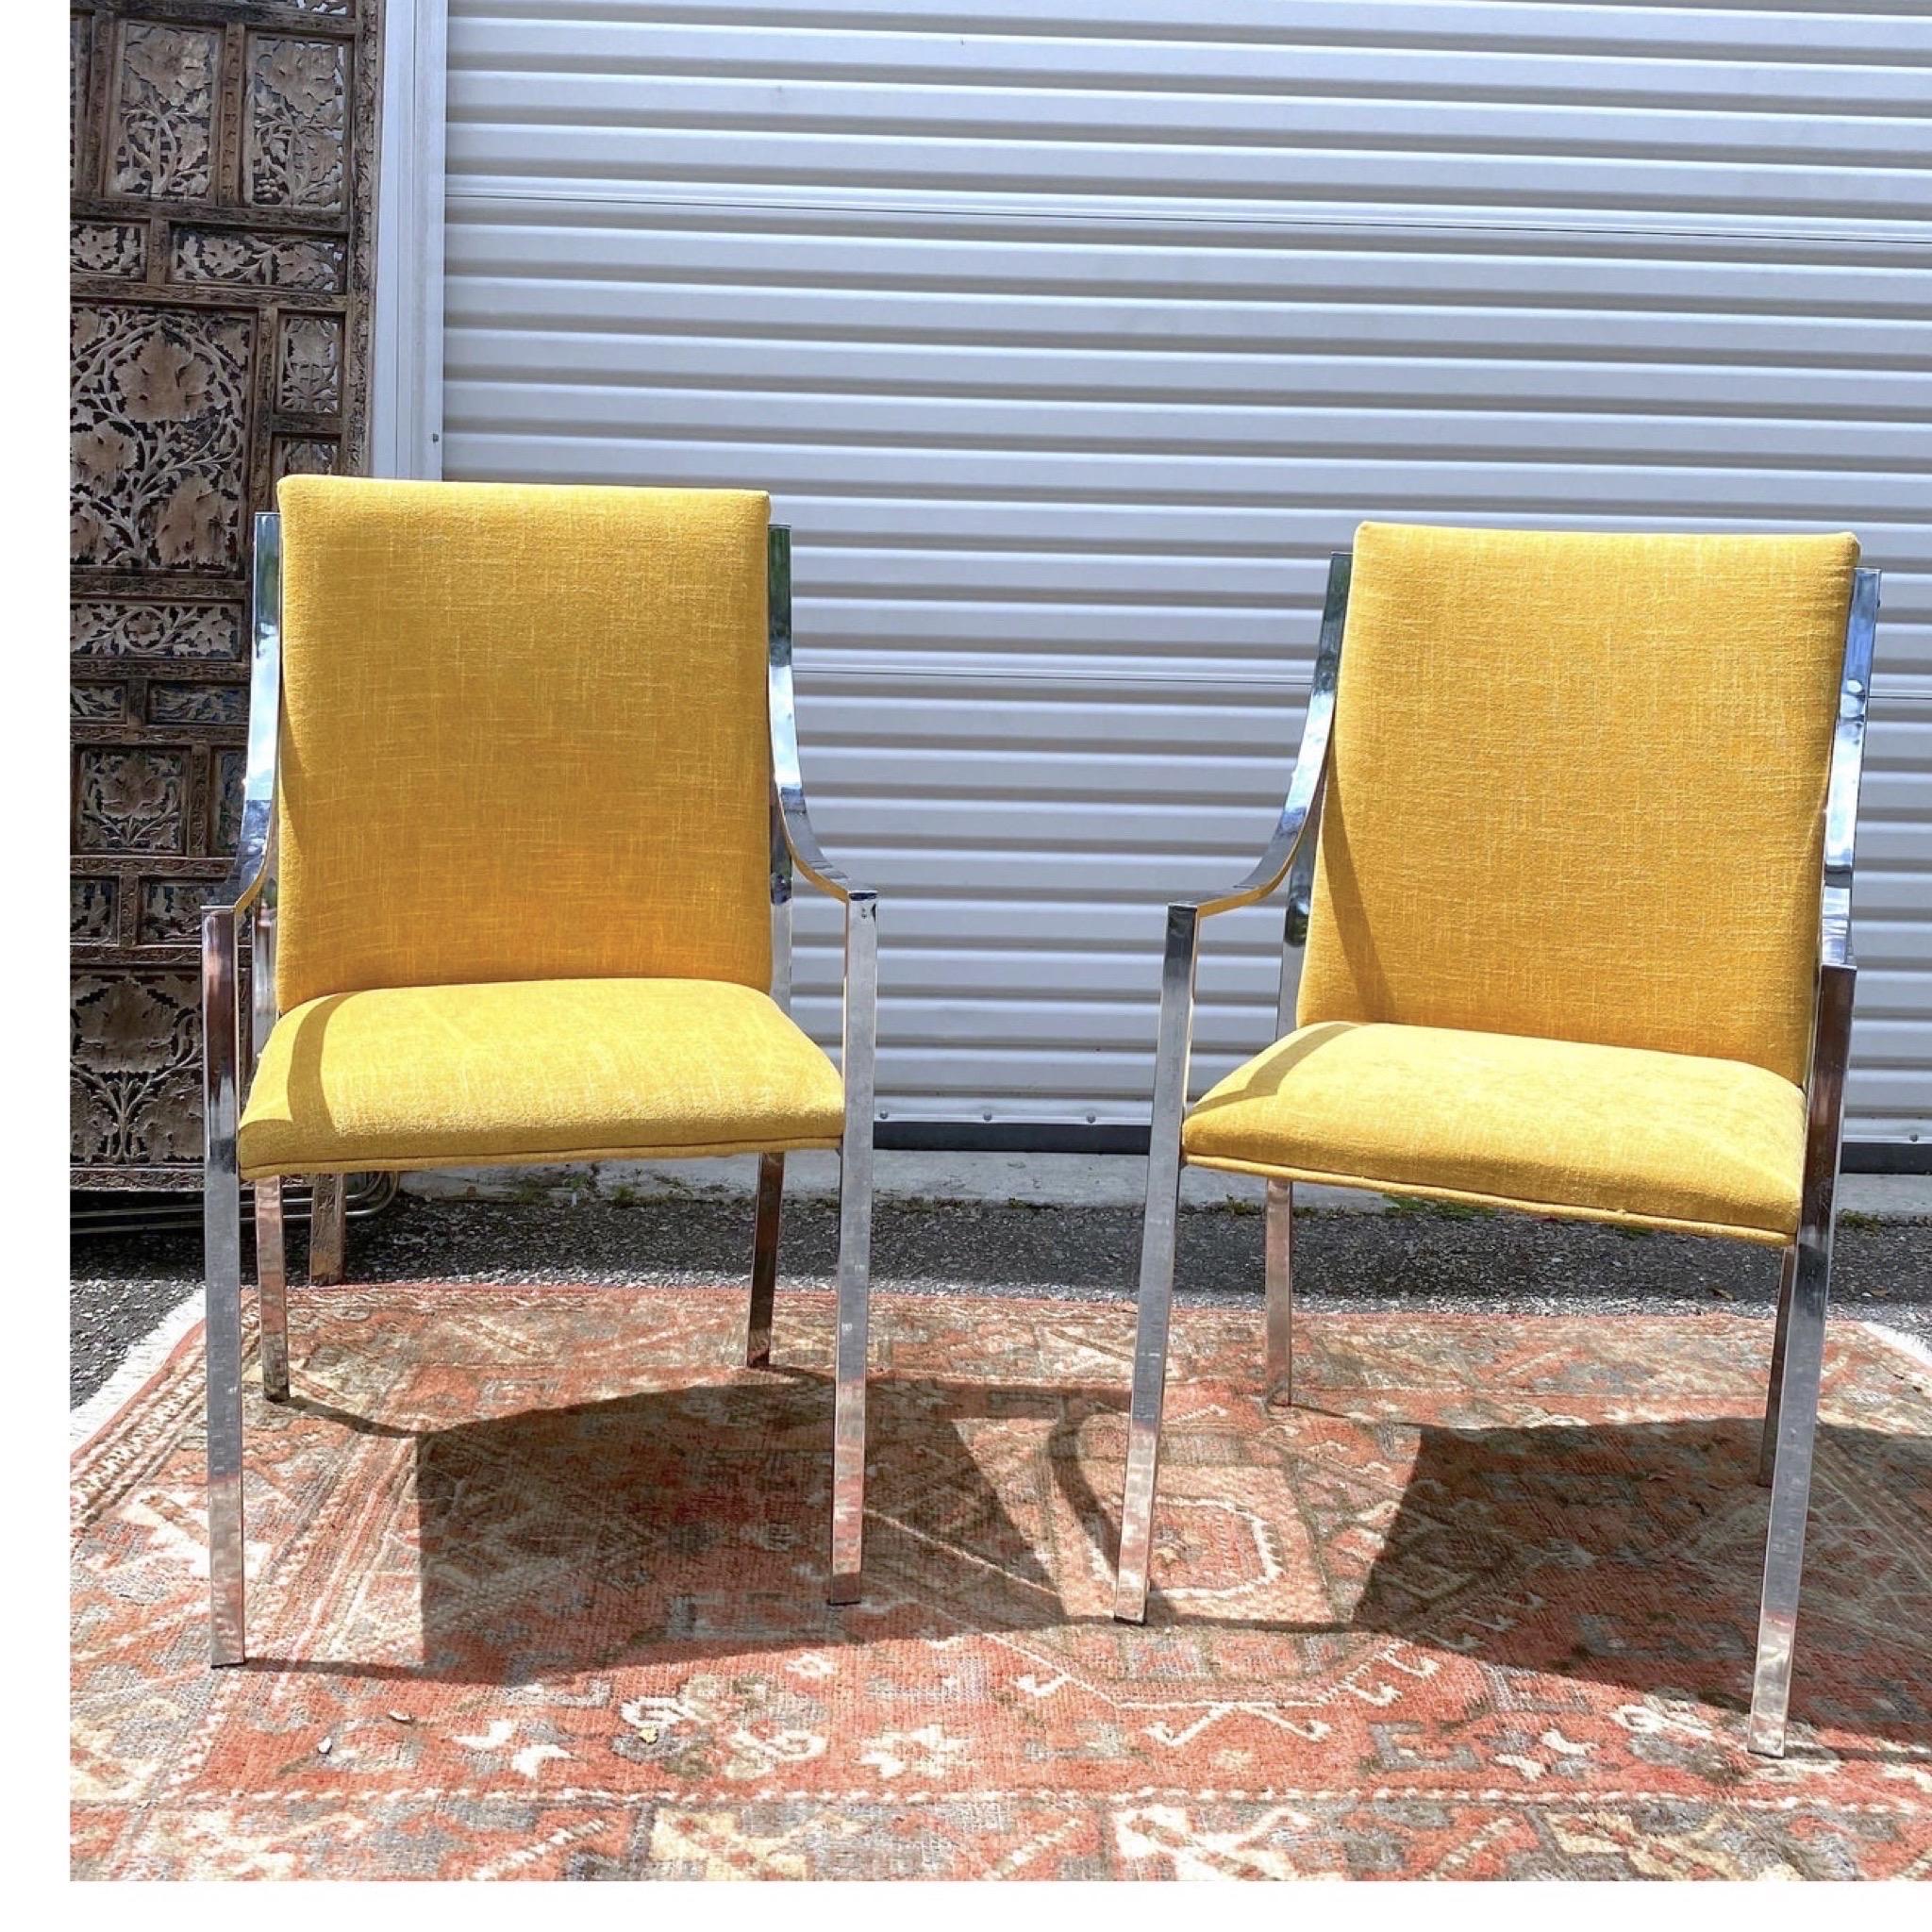 Pierre Cardin pour Dillingham Chaises d'appoint chromées - paire
Nouvellement tapissées dans un jaune moutarde éclatant, ces chaises chromées ont des lignes très épurées. J'ai opté pour une couleur unie afin que le cadre de la chaise se distingue